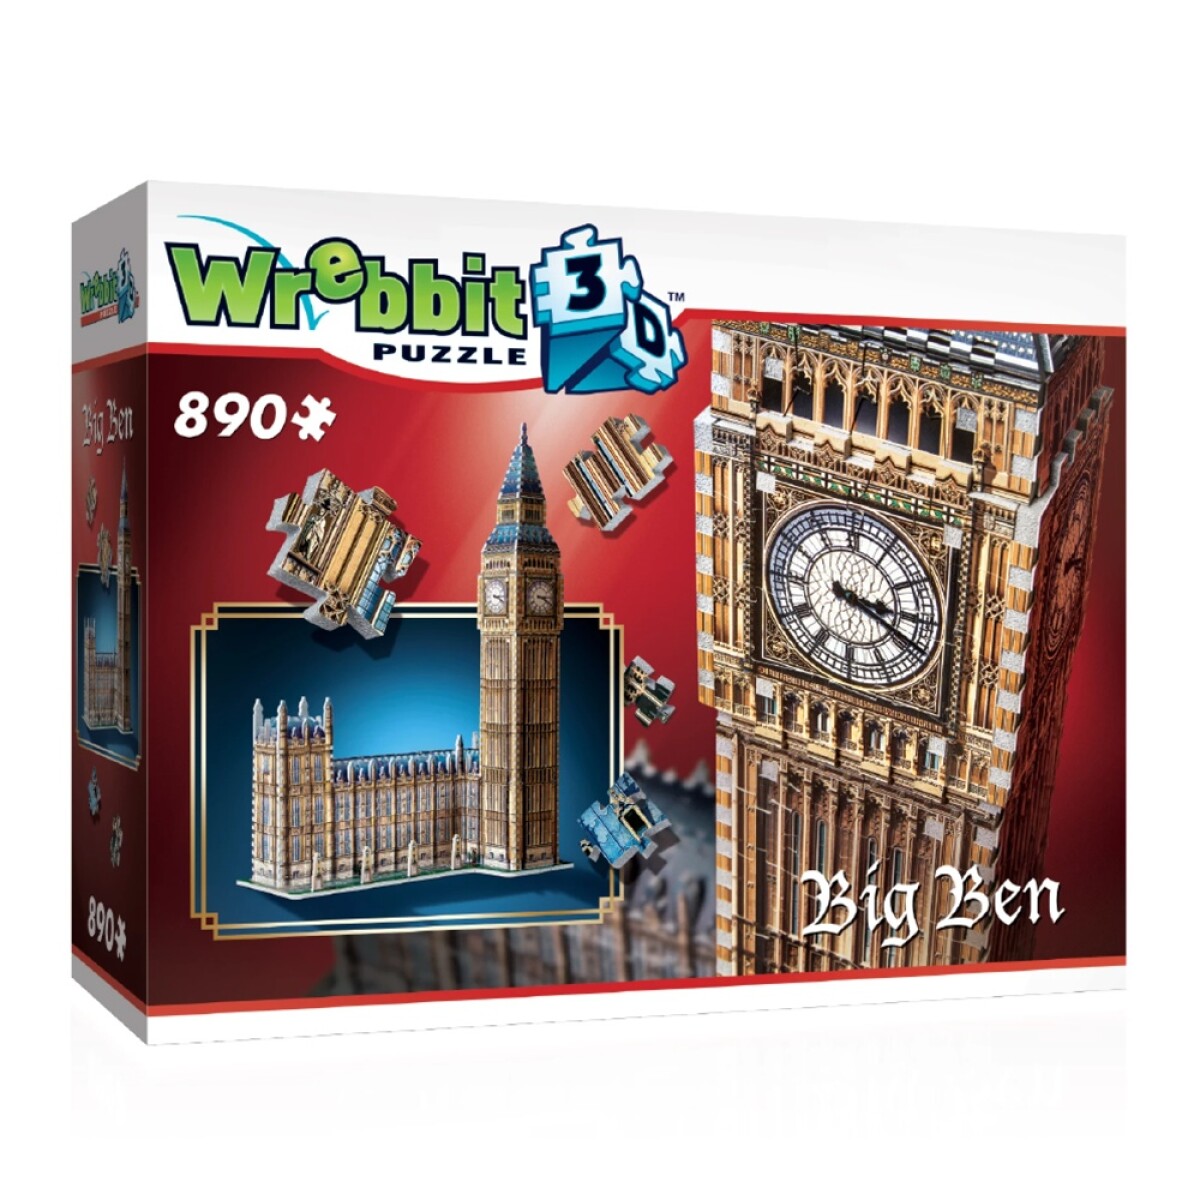 Puzzle 3D Maqueta del Big Ben en Londres 890 Piezas - Multicolor 